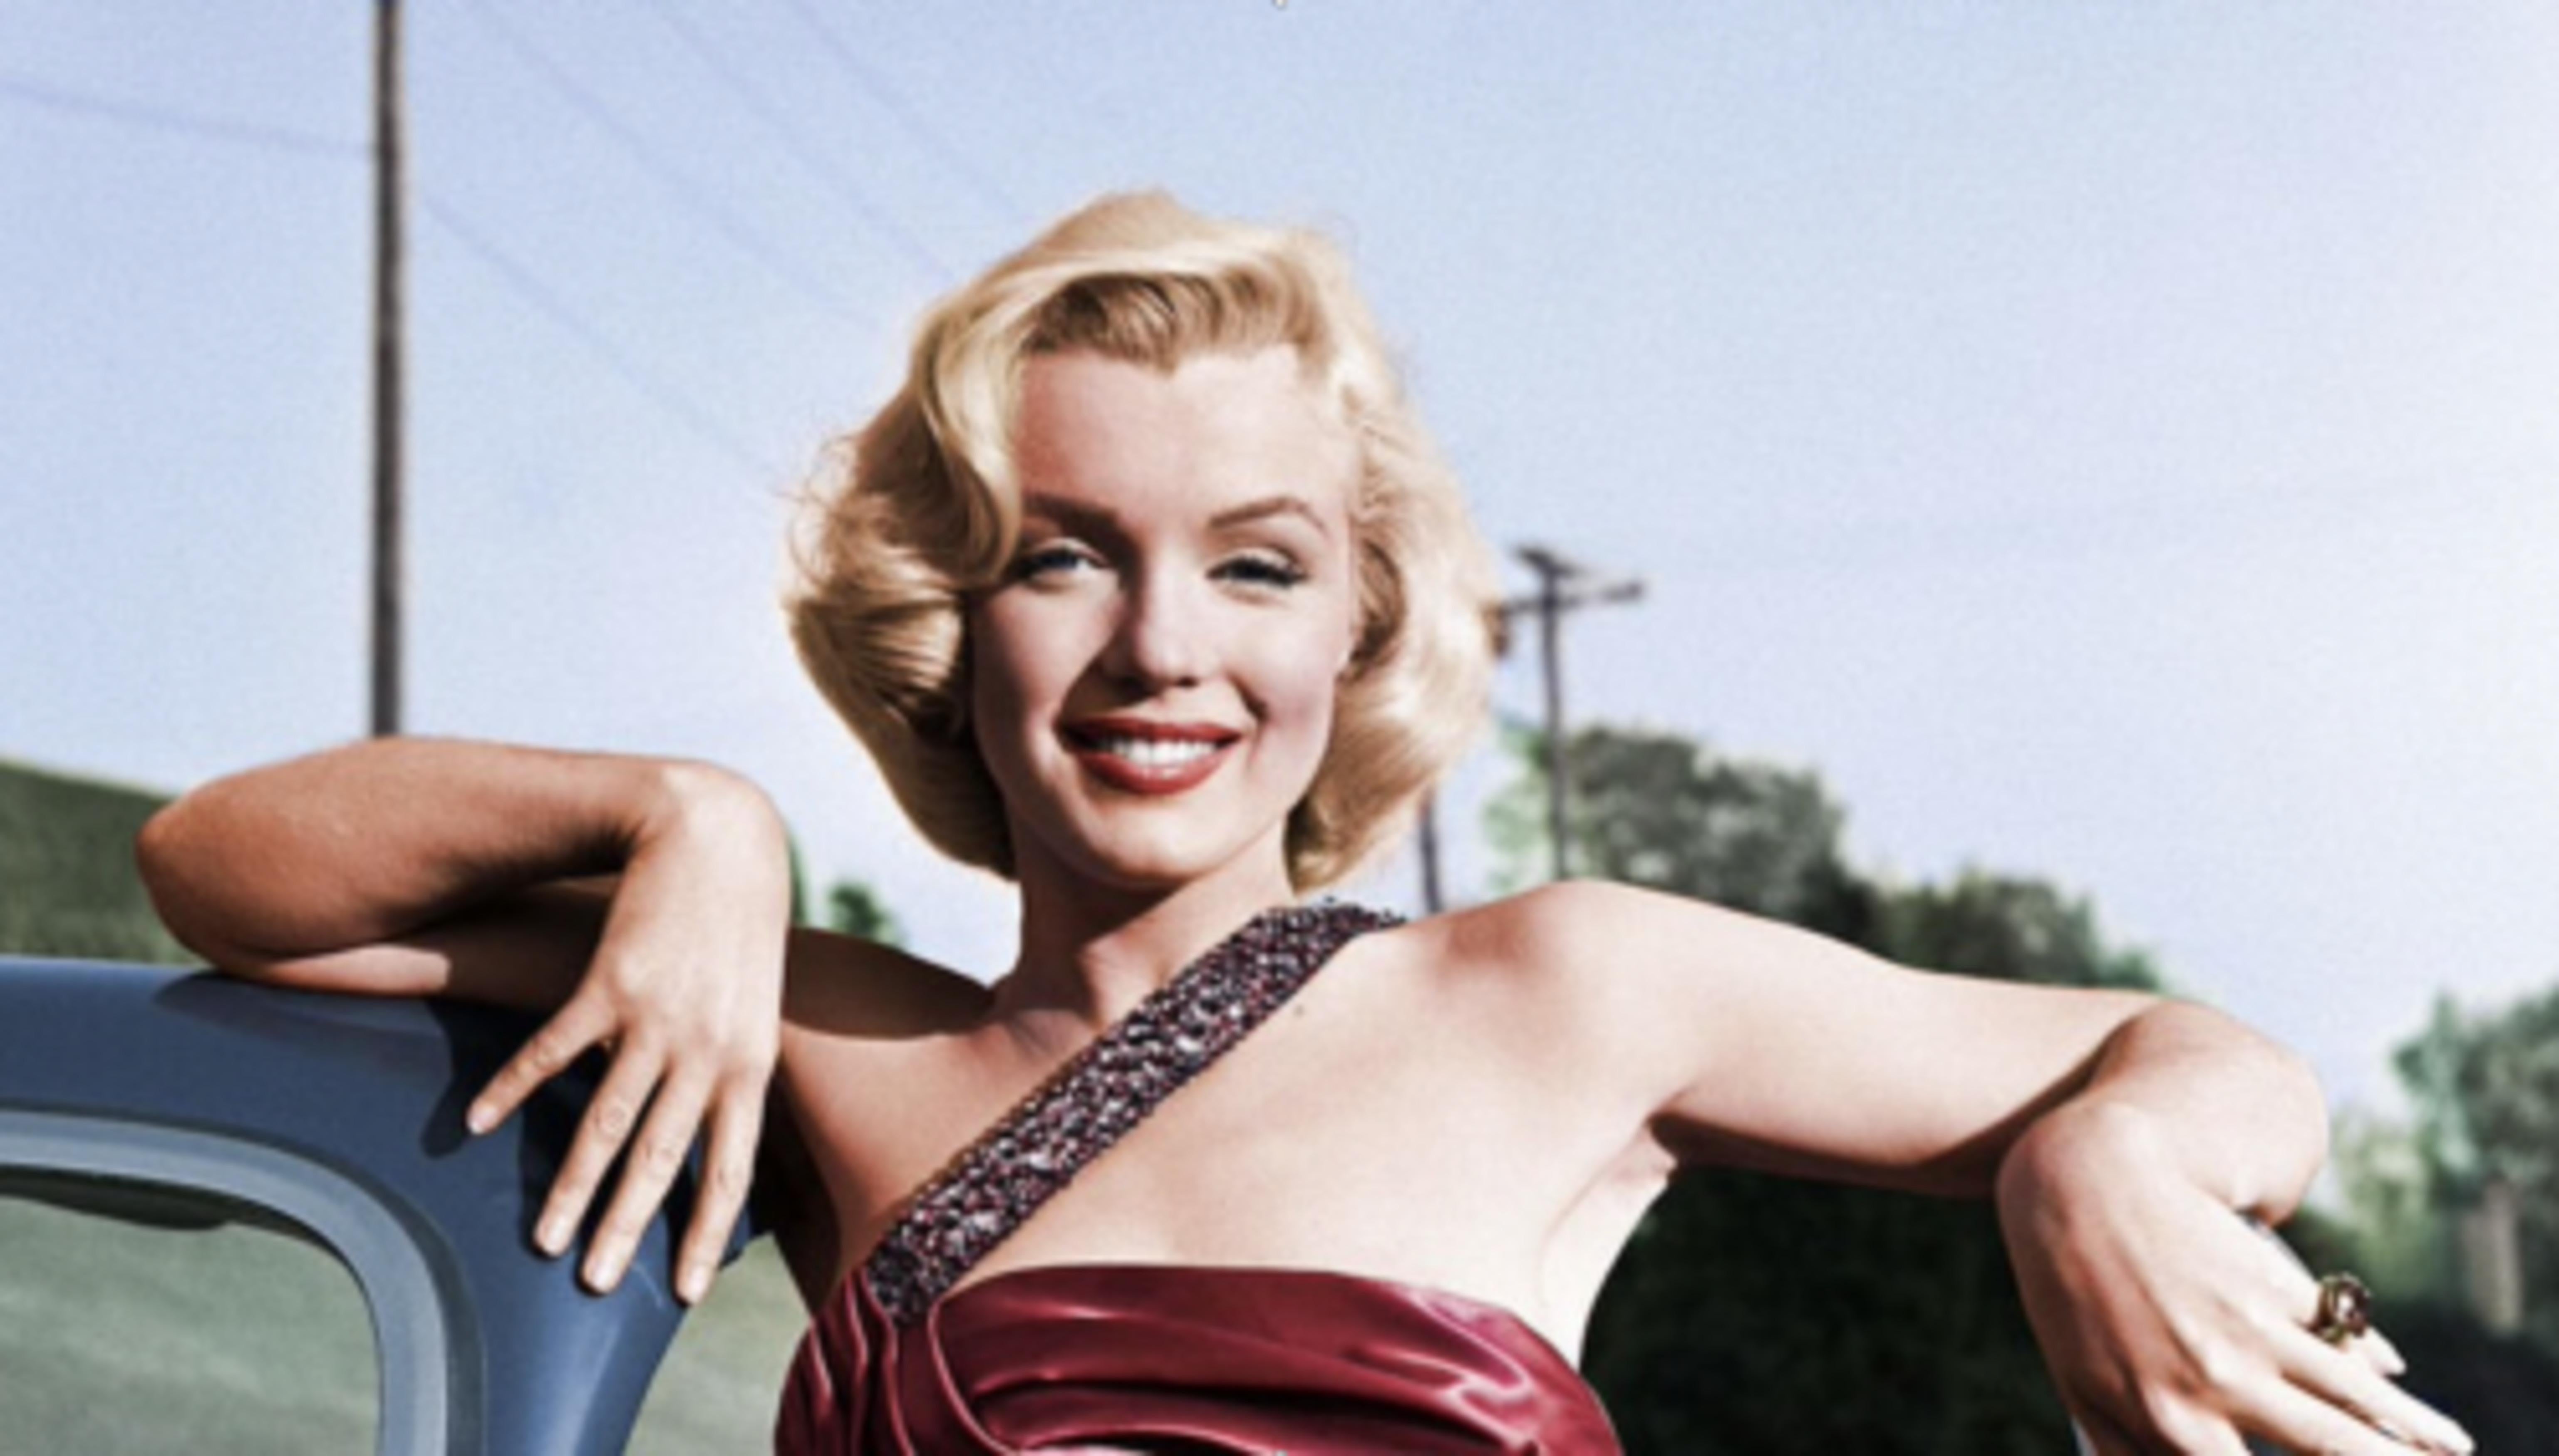 Marilyn in "Wie man einen Millionär heiratet – Photograph von Frank Worth